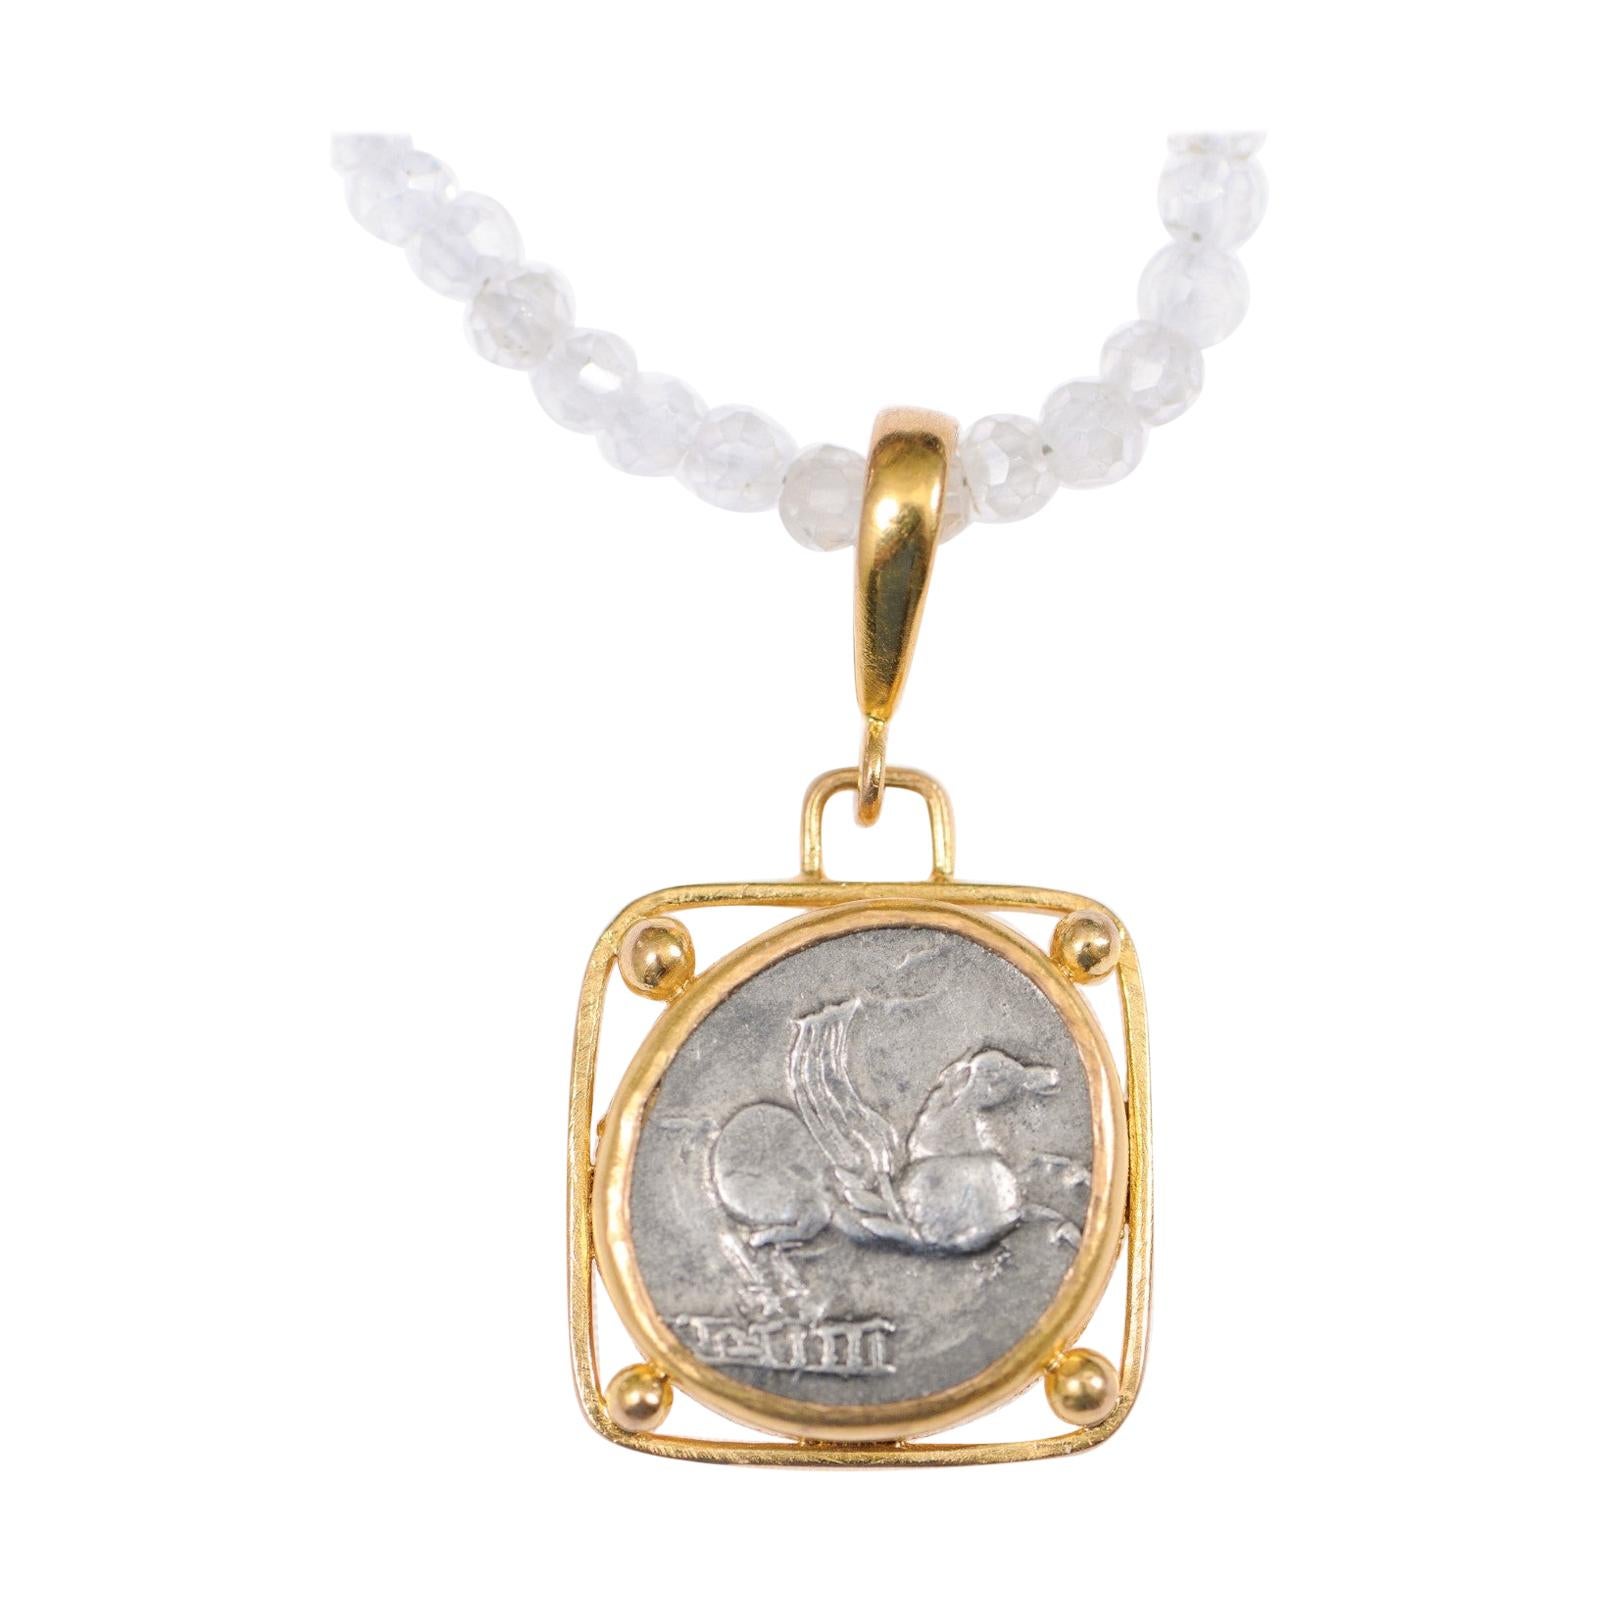 Authentique pièce de monnaie romaine en A Silver avec Pegasus sertie dans un pendentif en or 22k personnalisé